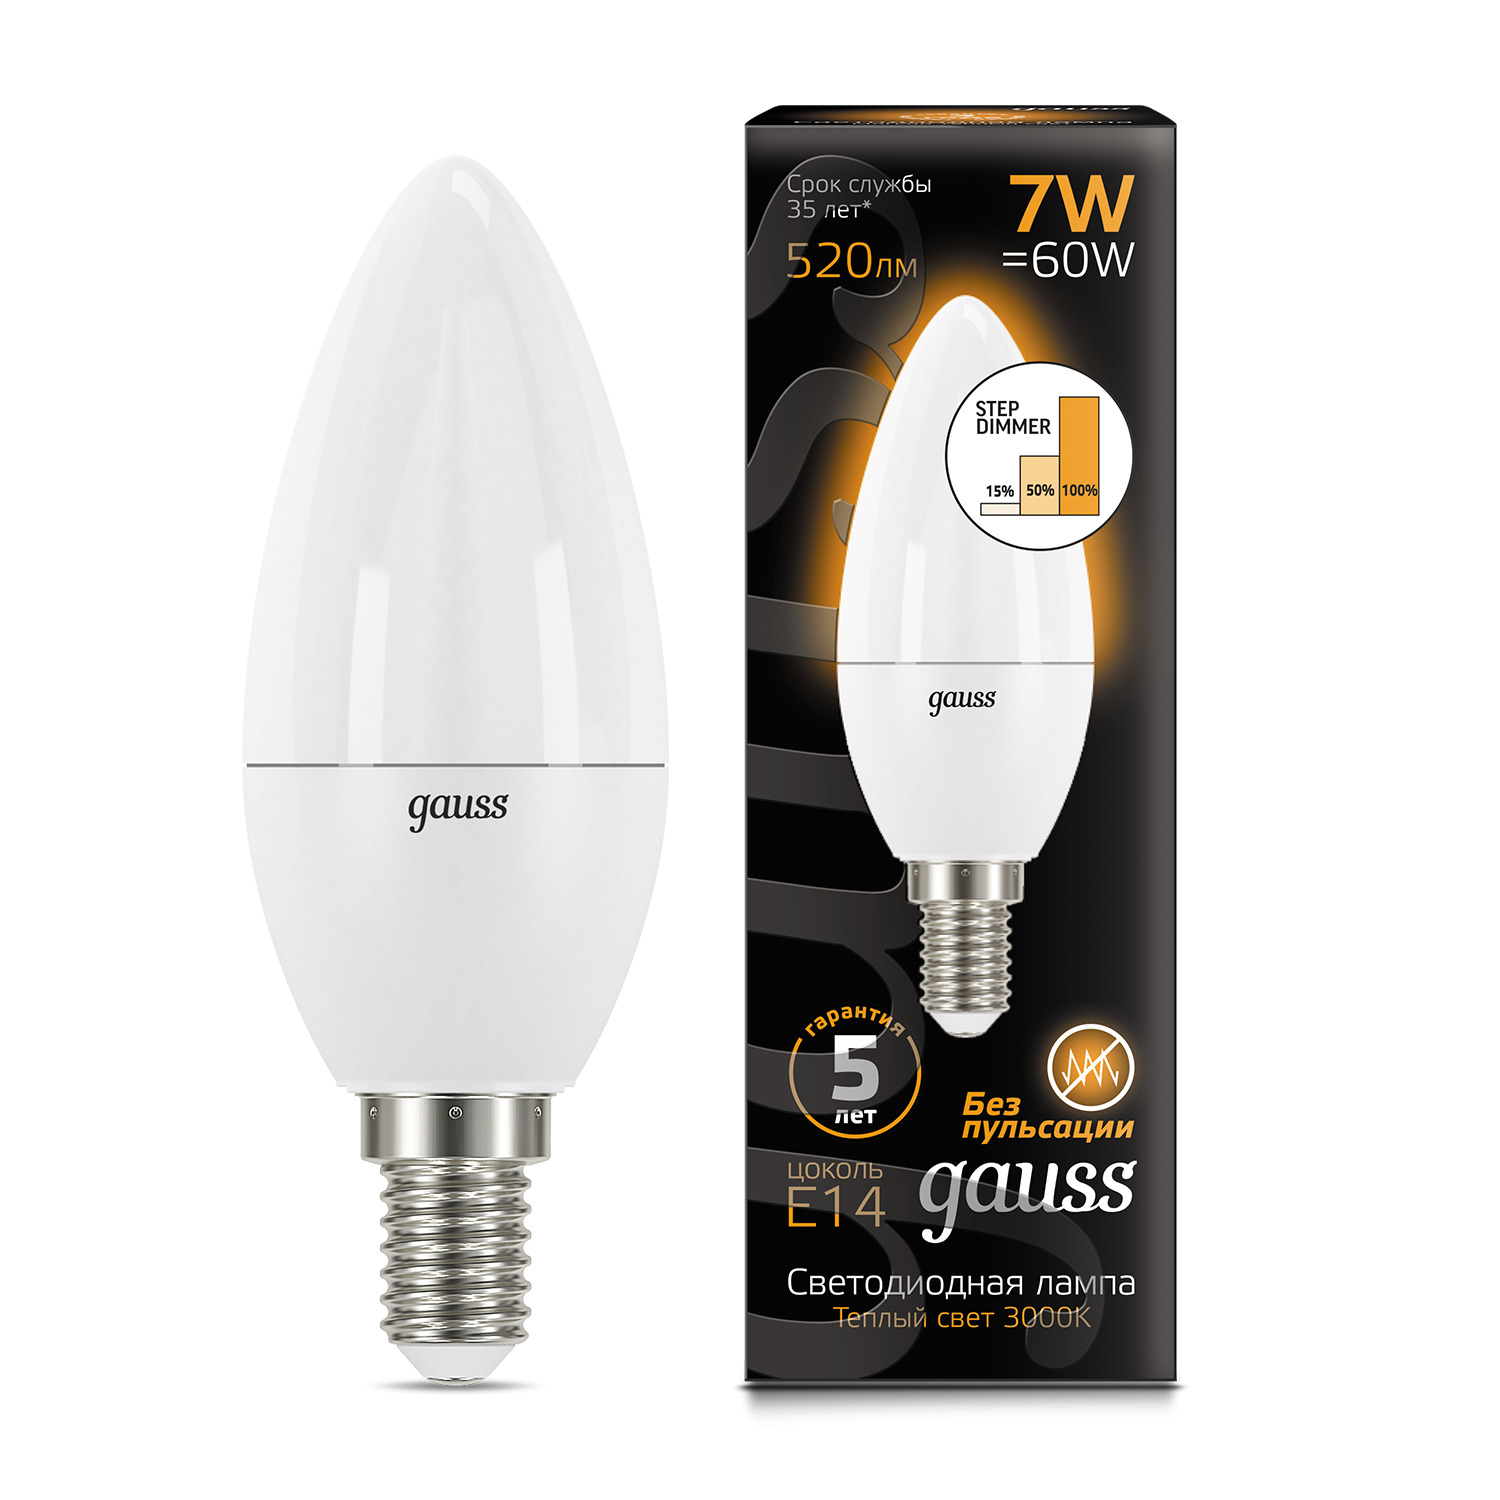 Лампа Gauss LED Свеча E14 7W 520lm 3000К step dimmable 1/10/100 лампа gauss led filament свеча e14 7w 580lm 4100к step dimmable 1 10 50